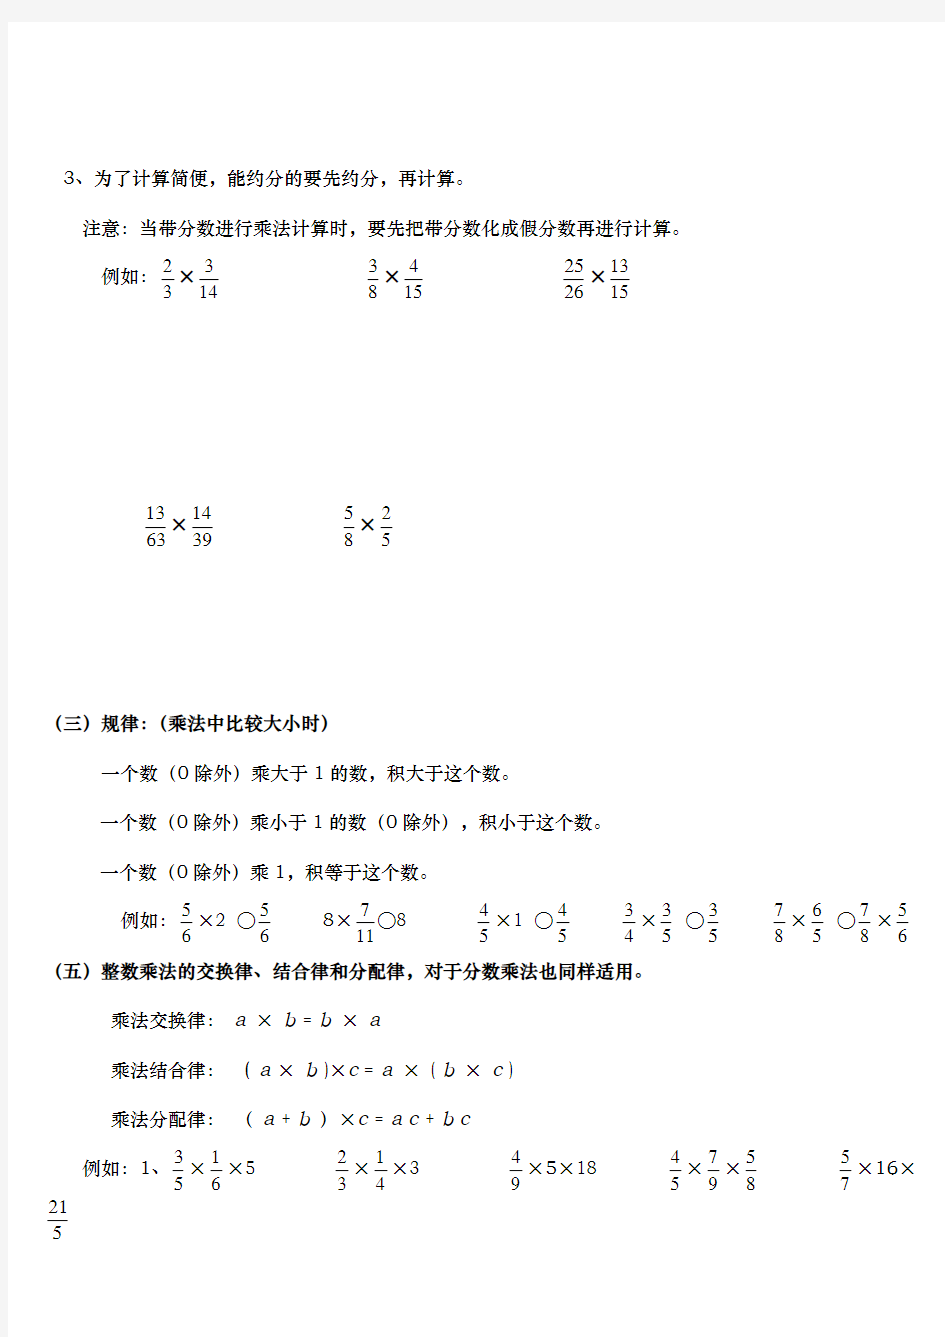 人教版小学六年级数学(上册)第一单元分数乘法分数乘法知识点和题型全面